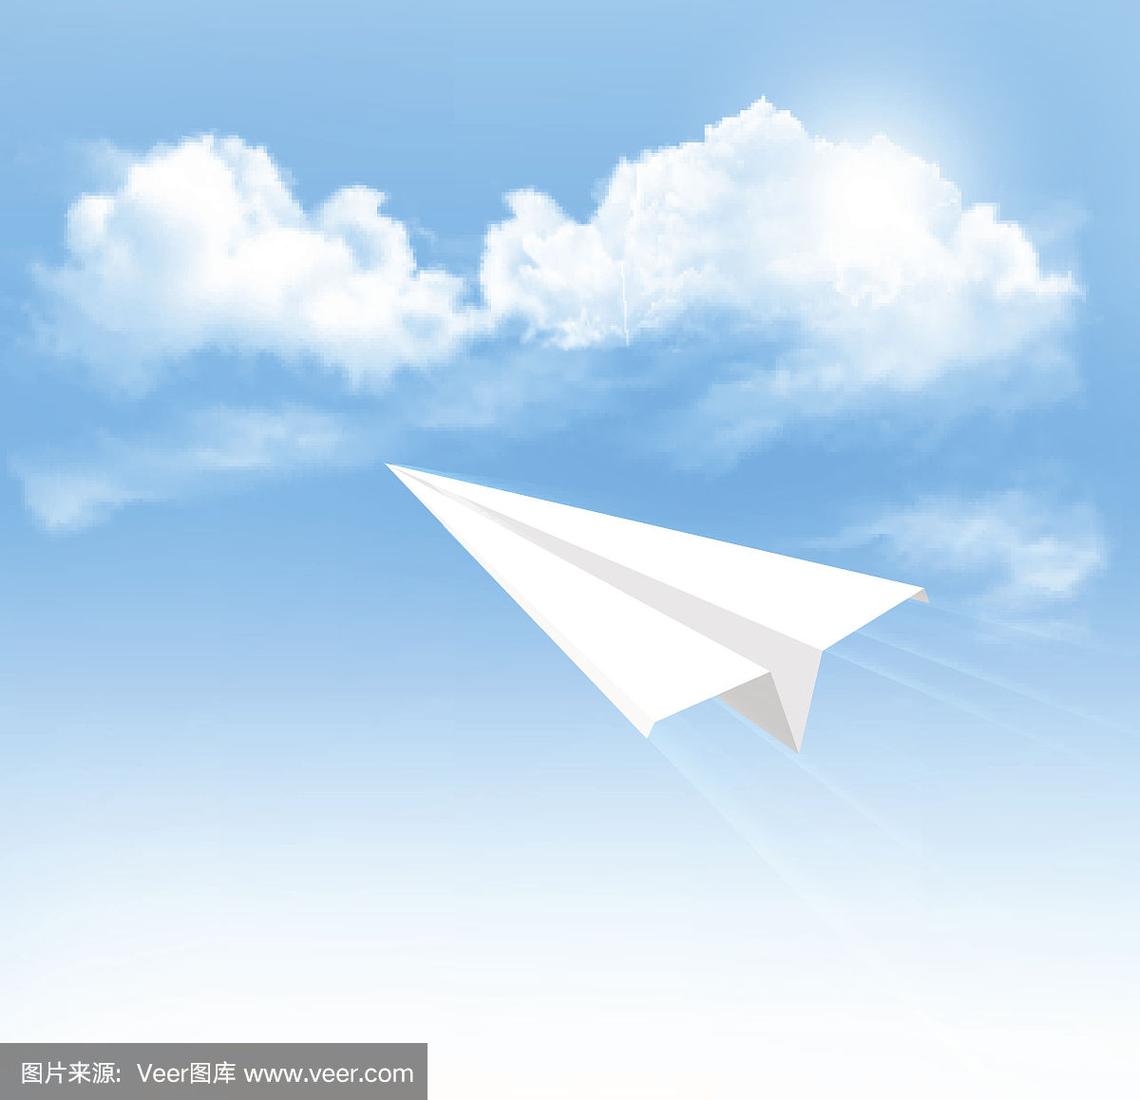 [纸飞机在哪儿]纸飞机是怎么飞起来的